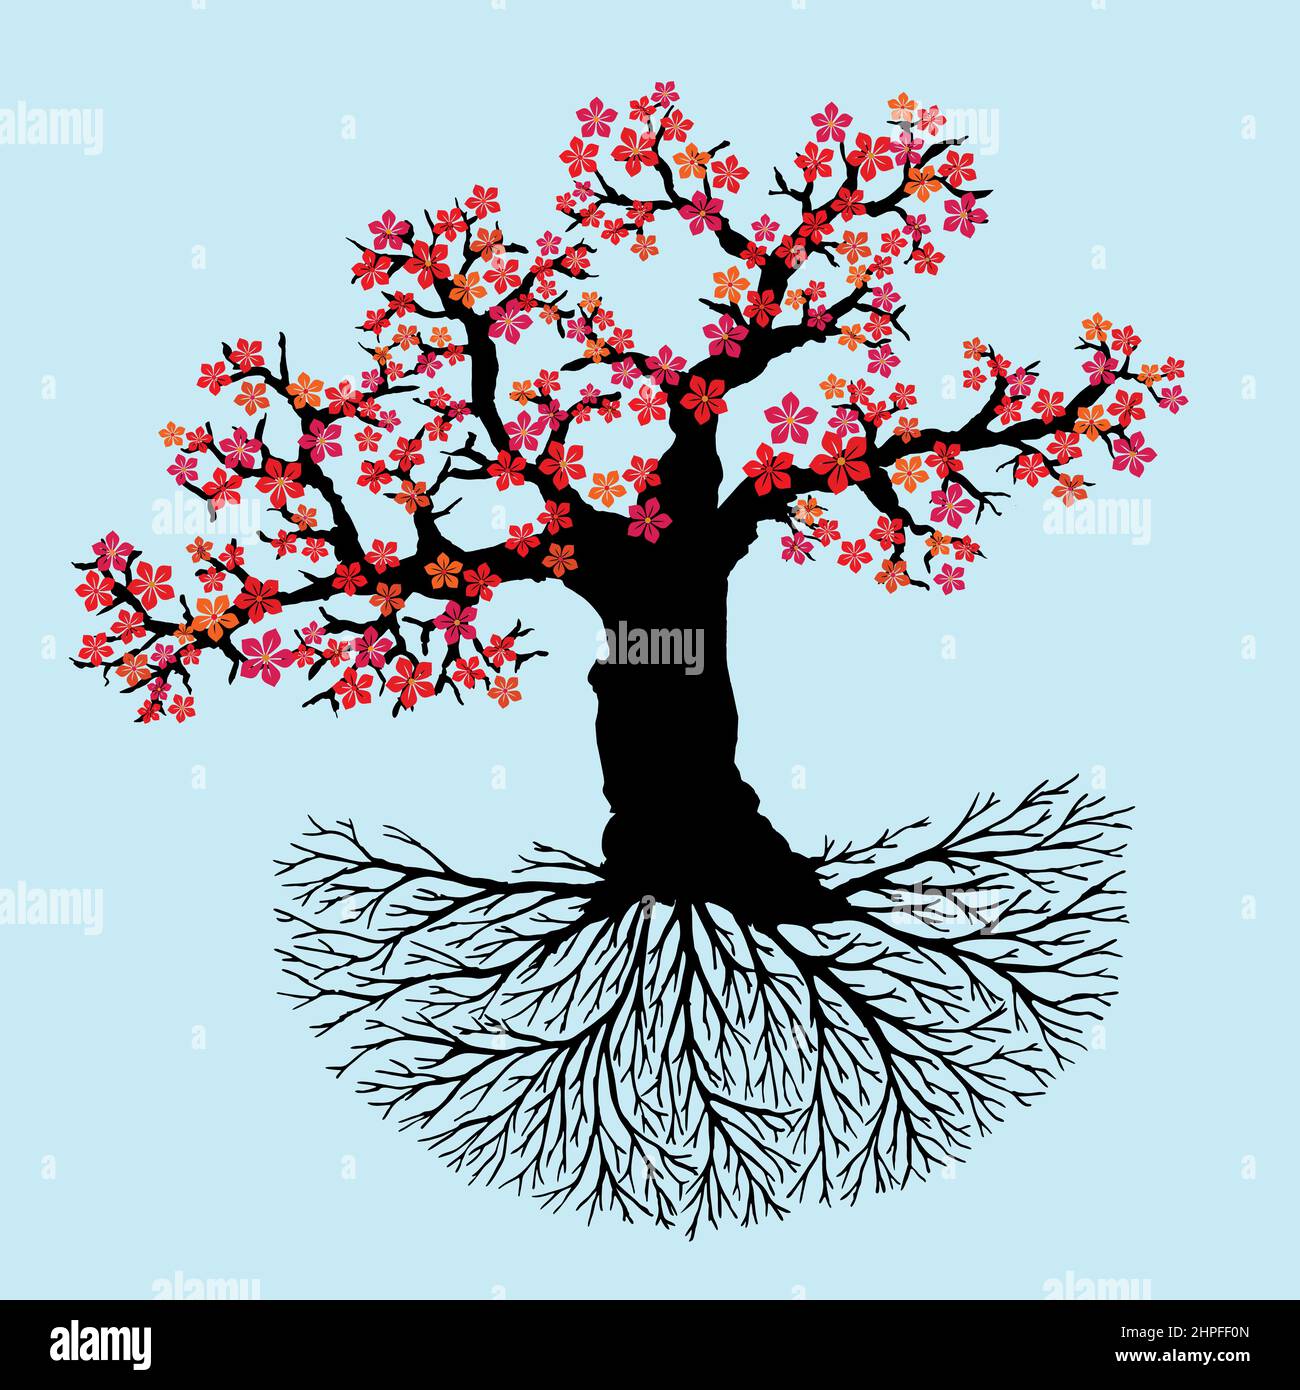 Vecchio albero di fiori di vita o yggdrasil con fiori rossi. Il tronco, i rami e le radici sono neri. Sfondo blu chiaro. Illustrazione Vettoriale